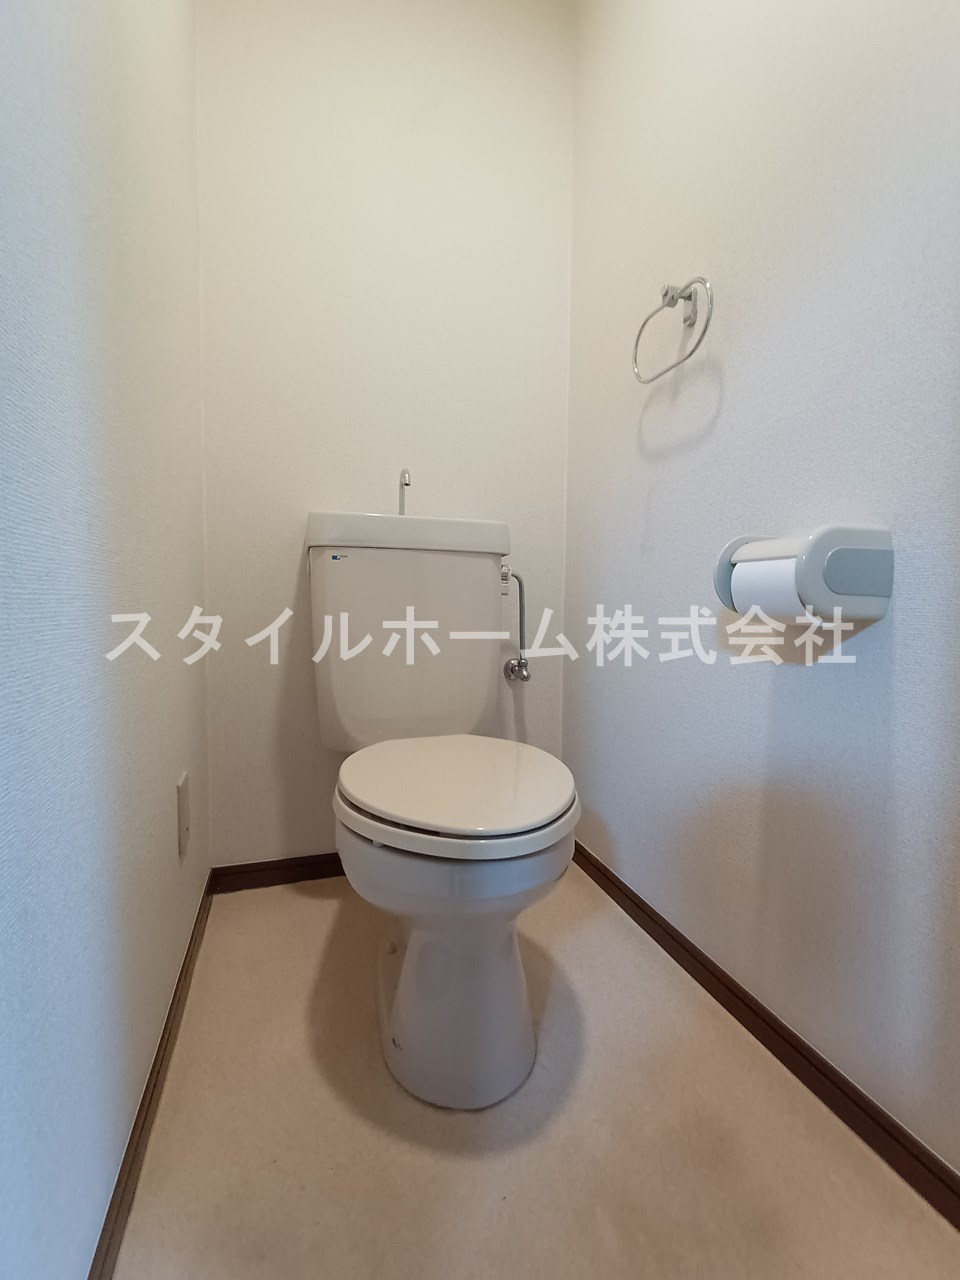 【サンモール欅のトイレ】